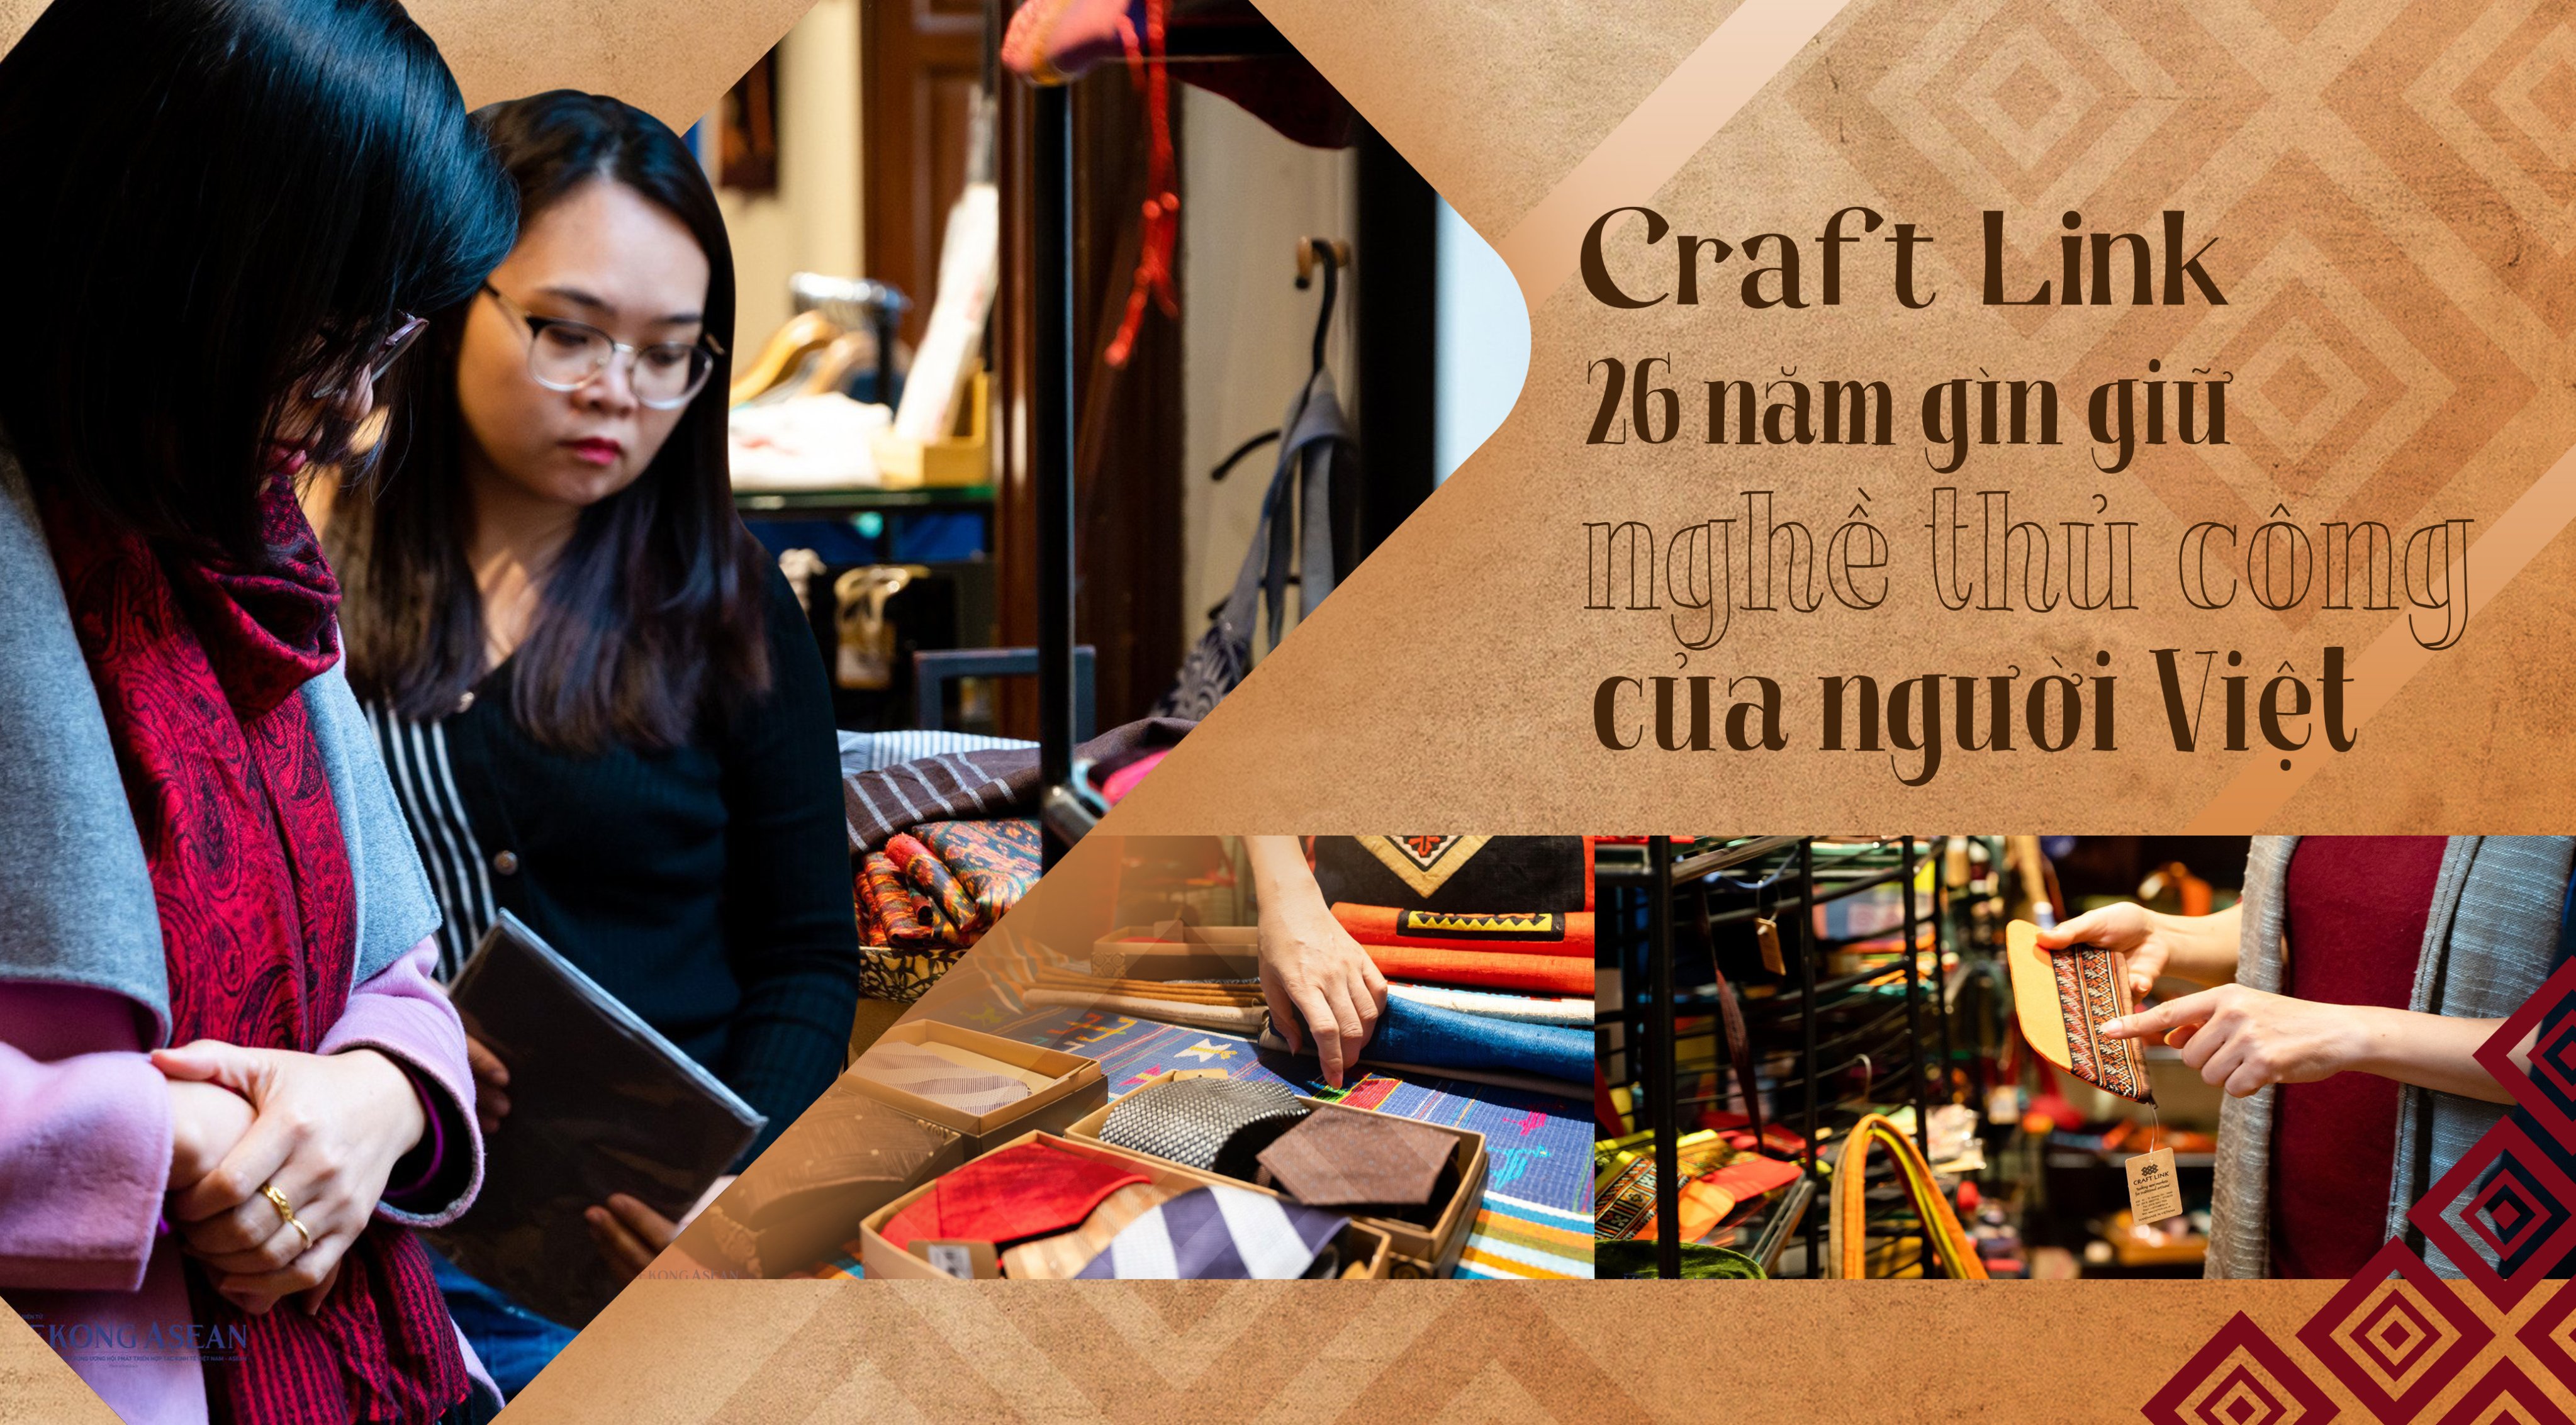 Craft Link đang hỗ trợ các nhóm đưa hoa văn truyền thống vào các sản phẩm đời thường, vào cuộc sống đương đại. Ảnh: Quách Sơn